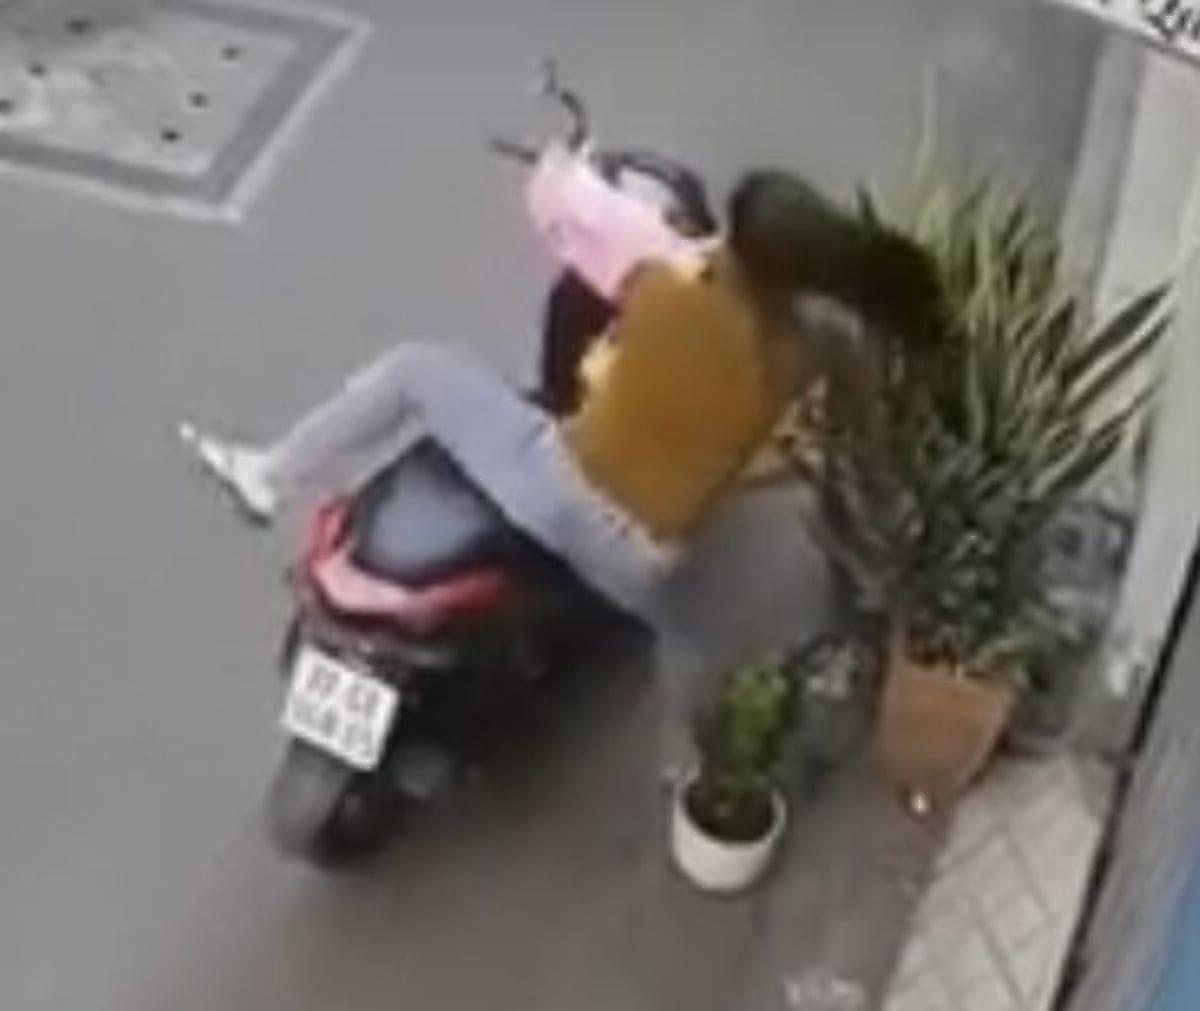 Воровка, похищая горшок с кустом, чуть не лишилась мотоцикла во Вьетнаме